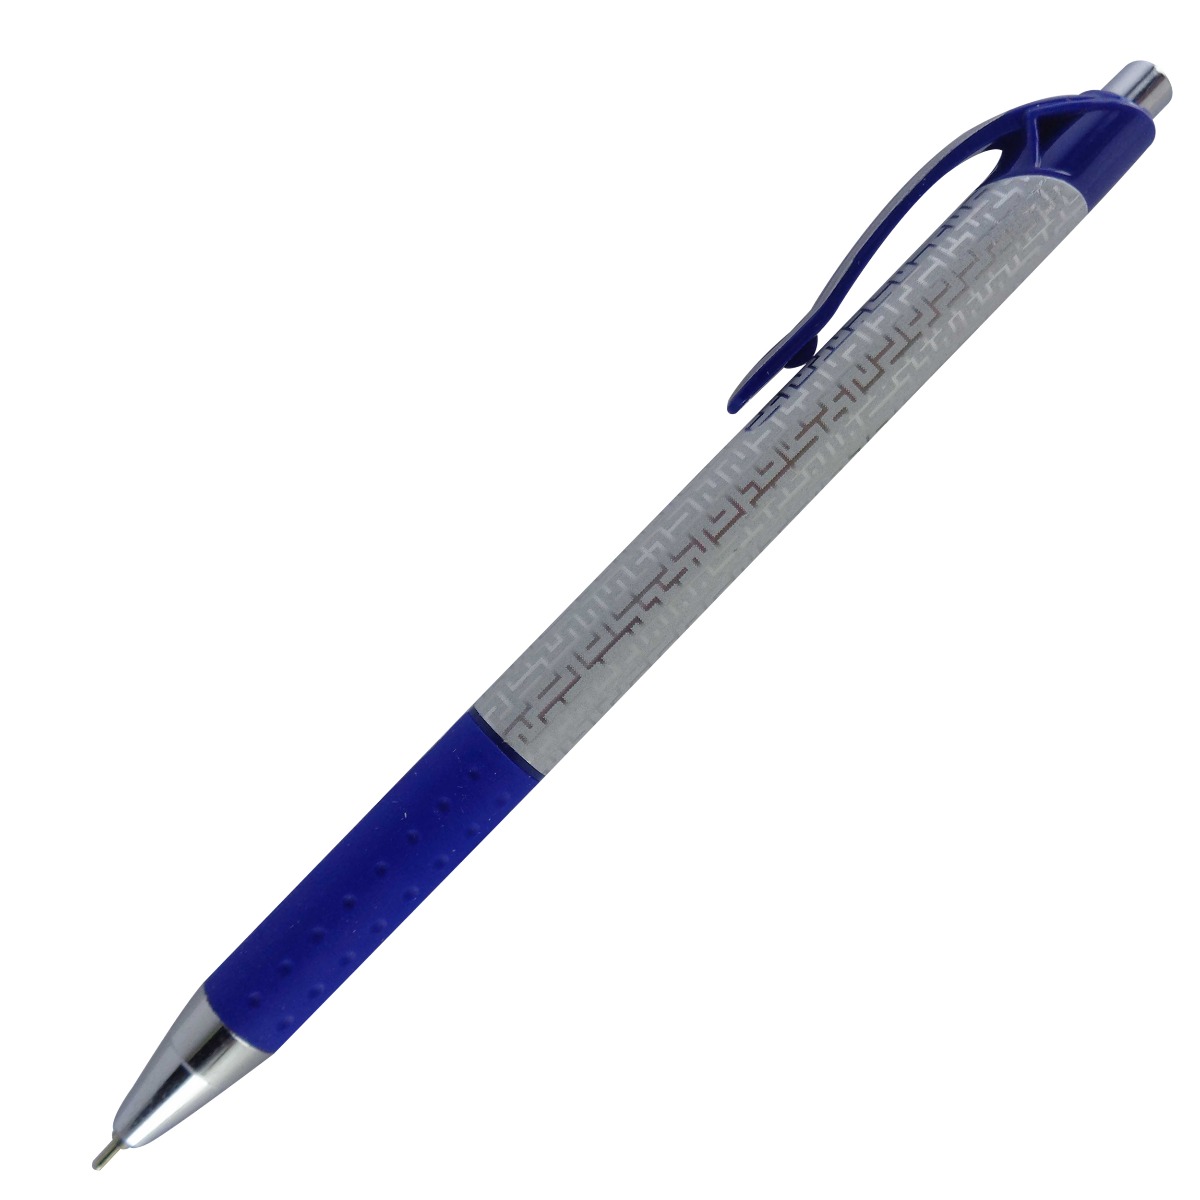 Cello Model: 14900 techno tip clic white color body with blue clip blue ink fine tip retractable ball pen